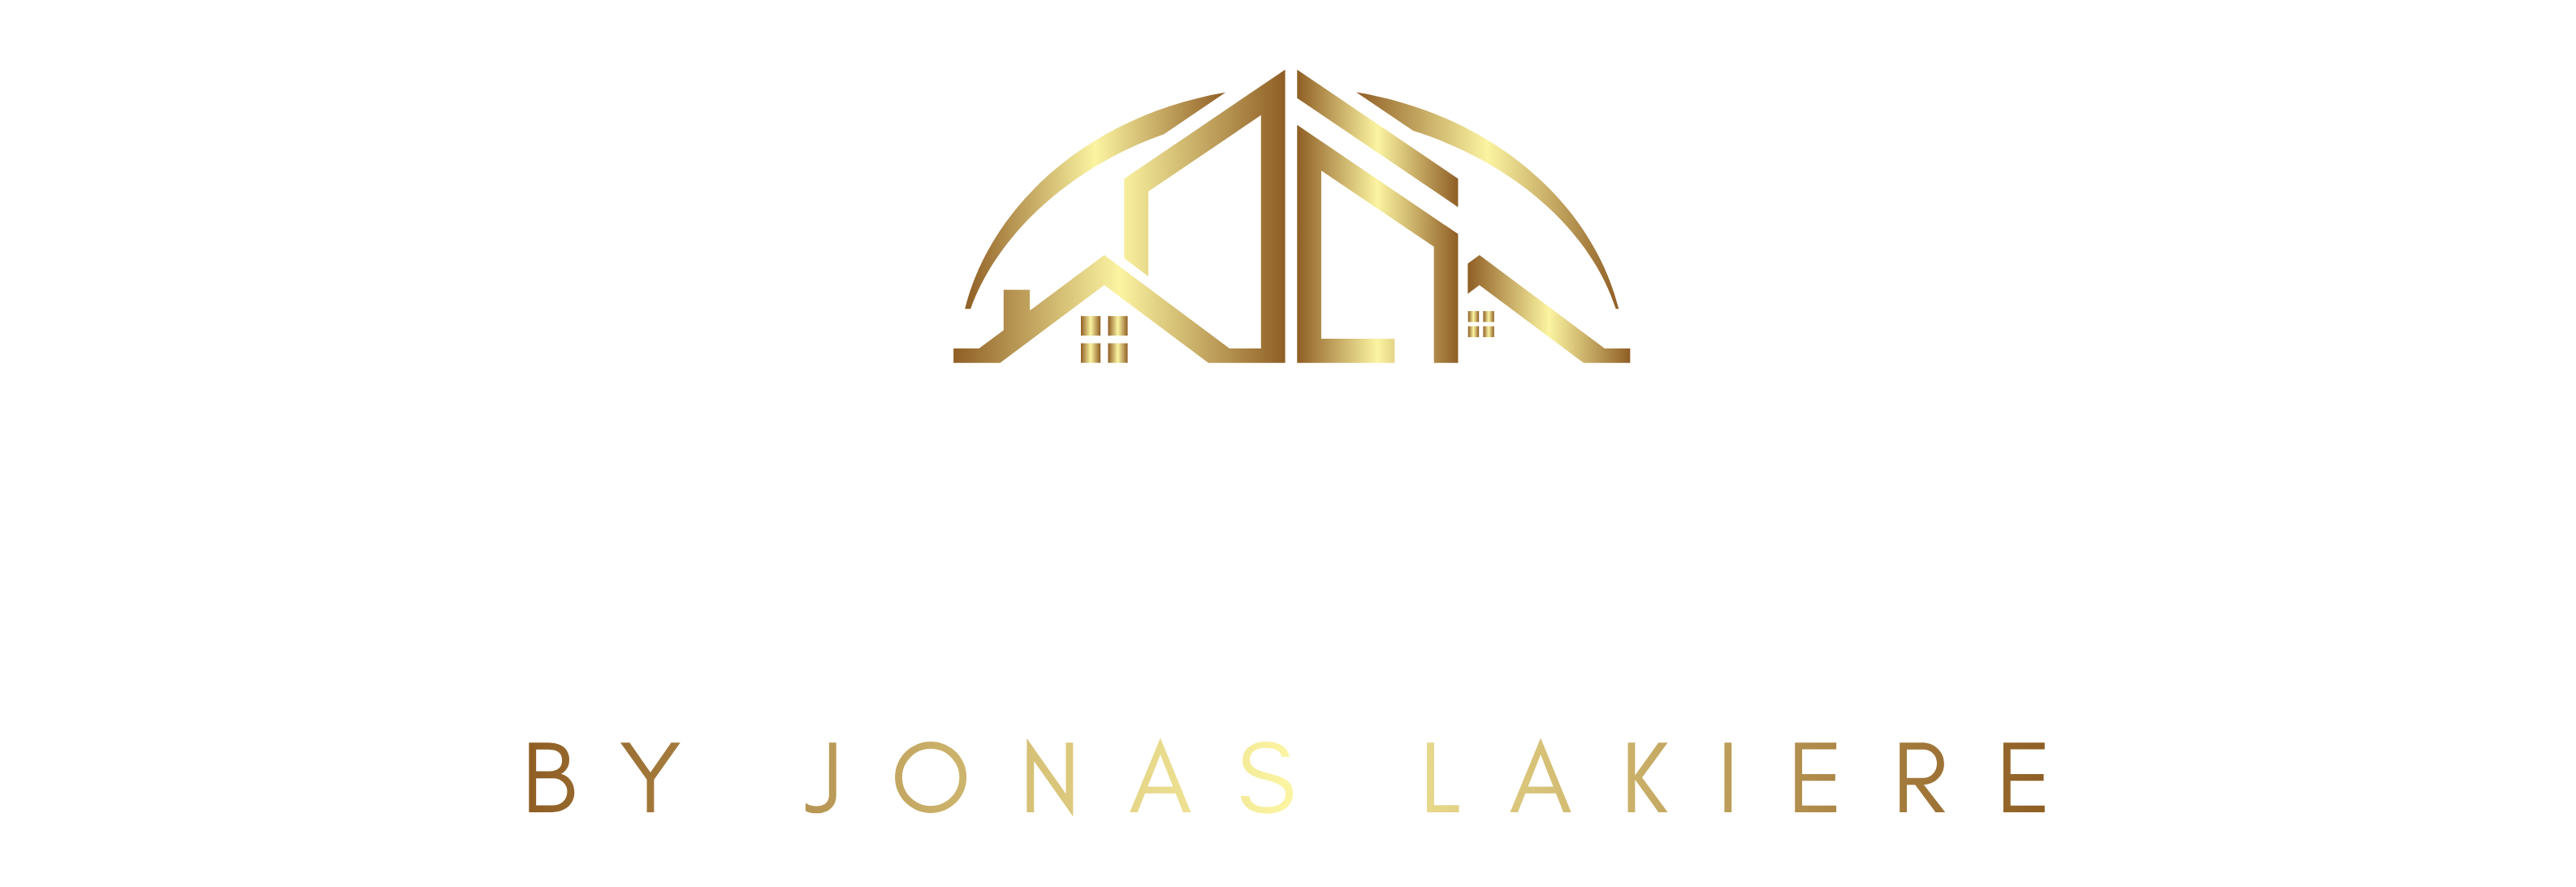 Projects Unlimited by Jonas Lakiere